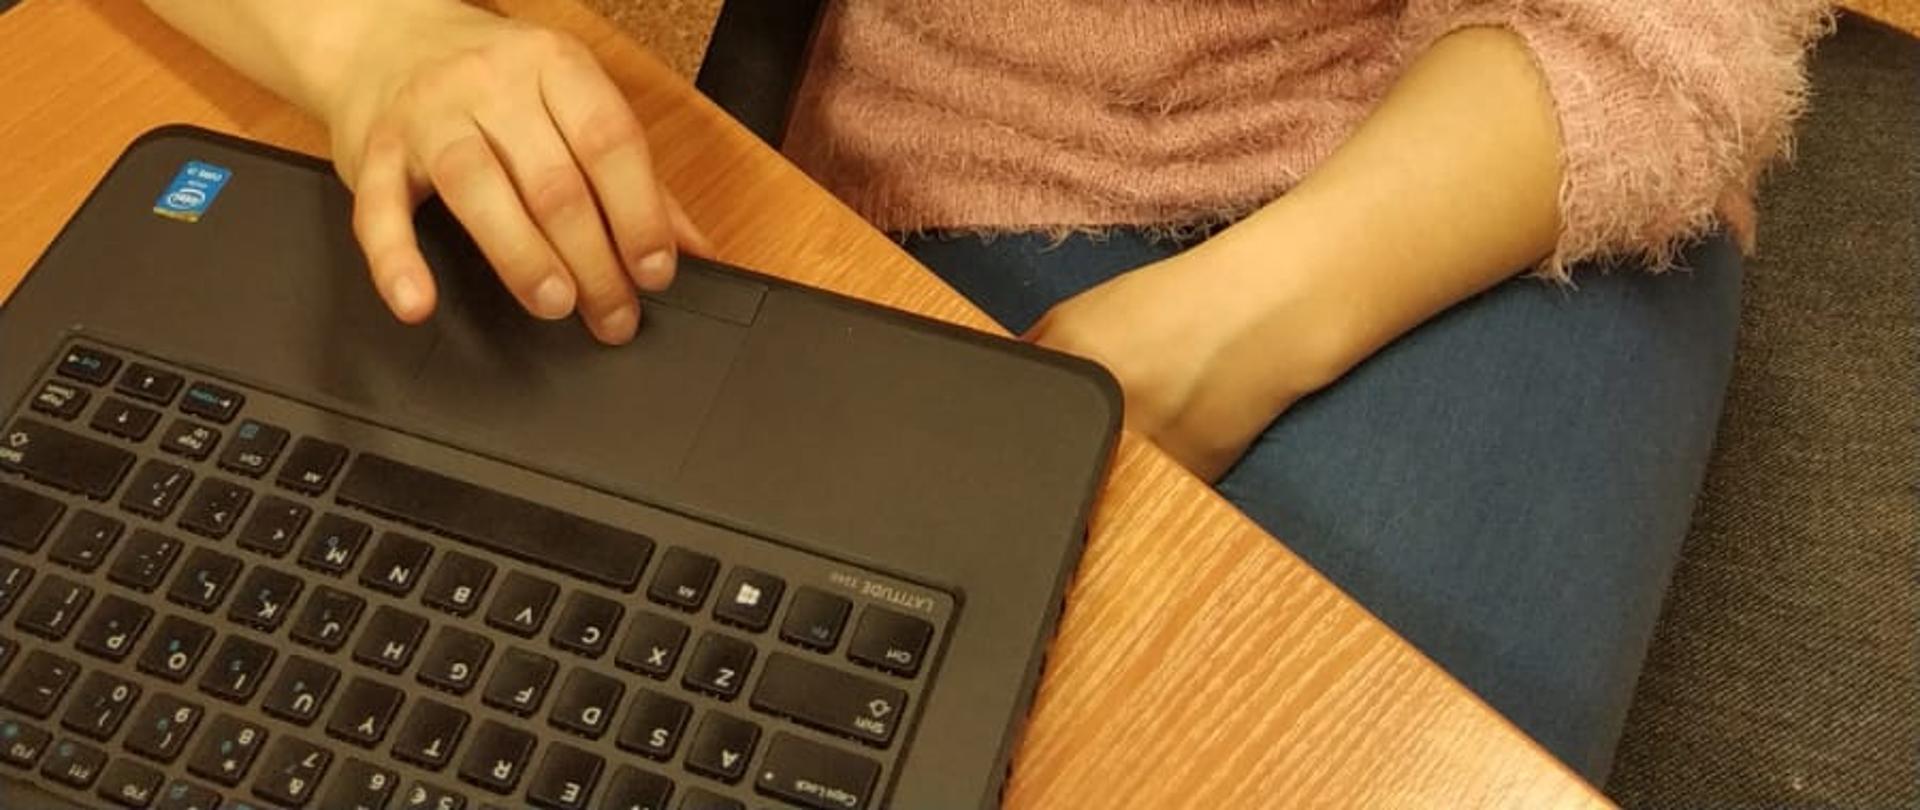 Przedstawia kobietę w różowym swetrze i w niebieskich jeansach, siedzącą przy laptopie, prowadzącą zajęcia.